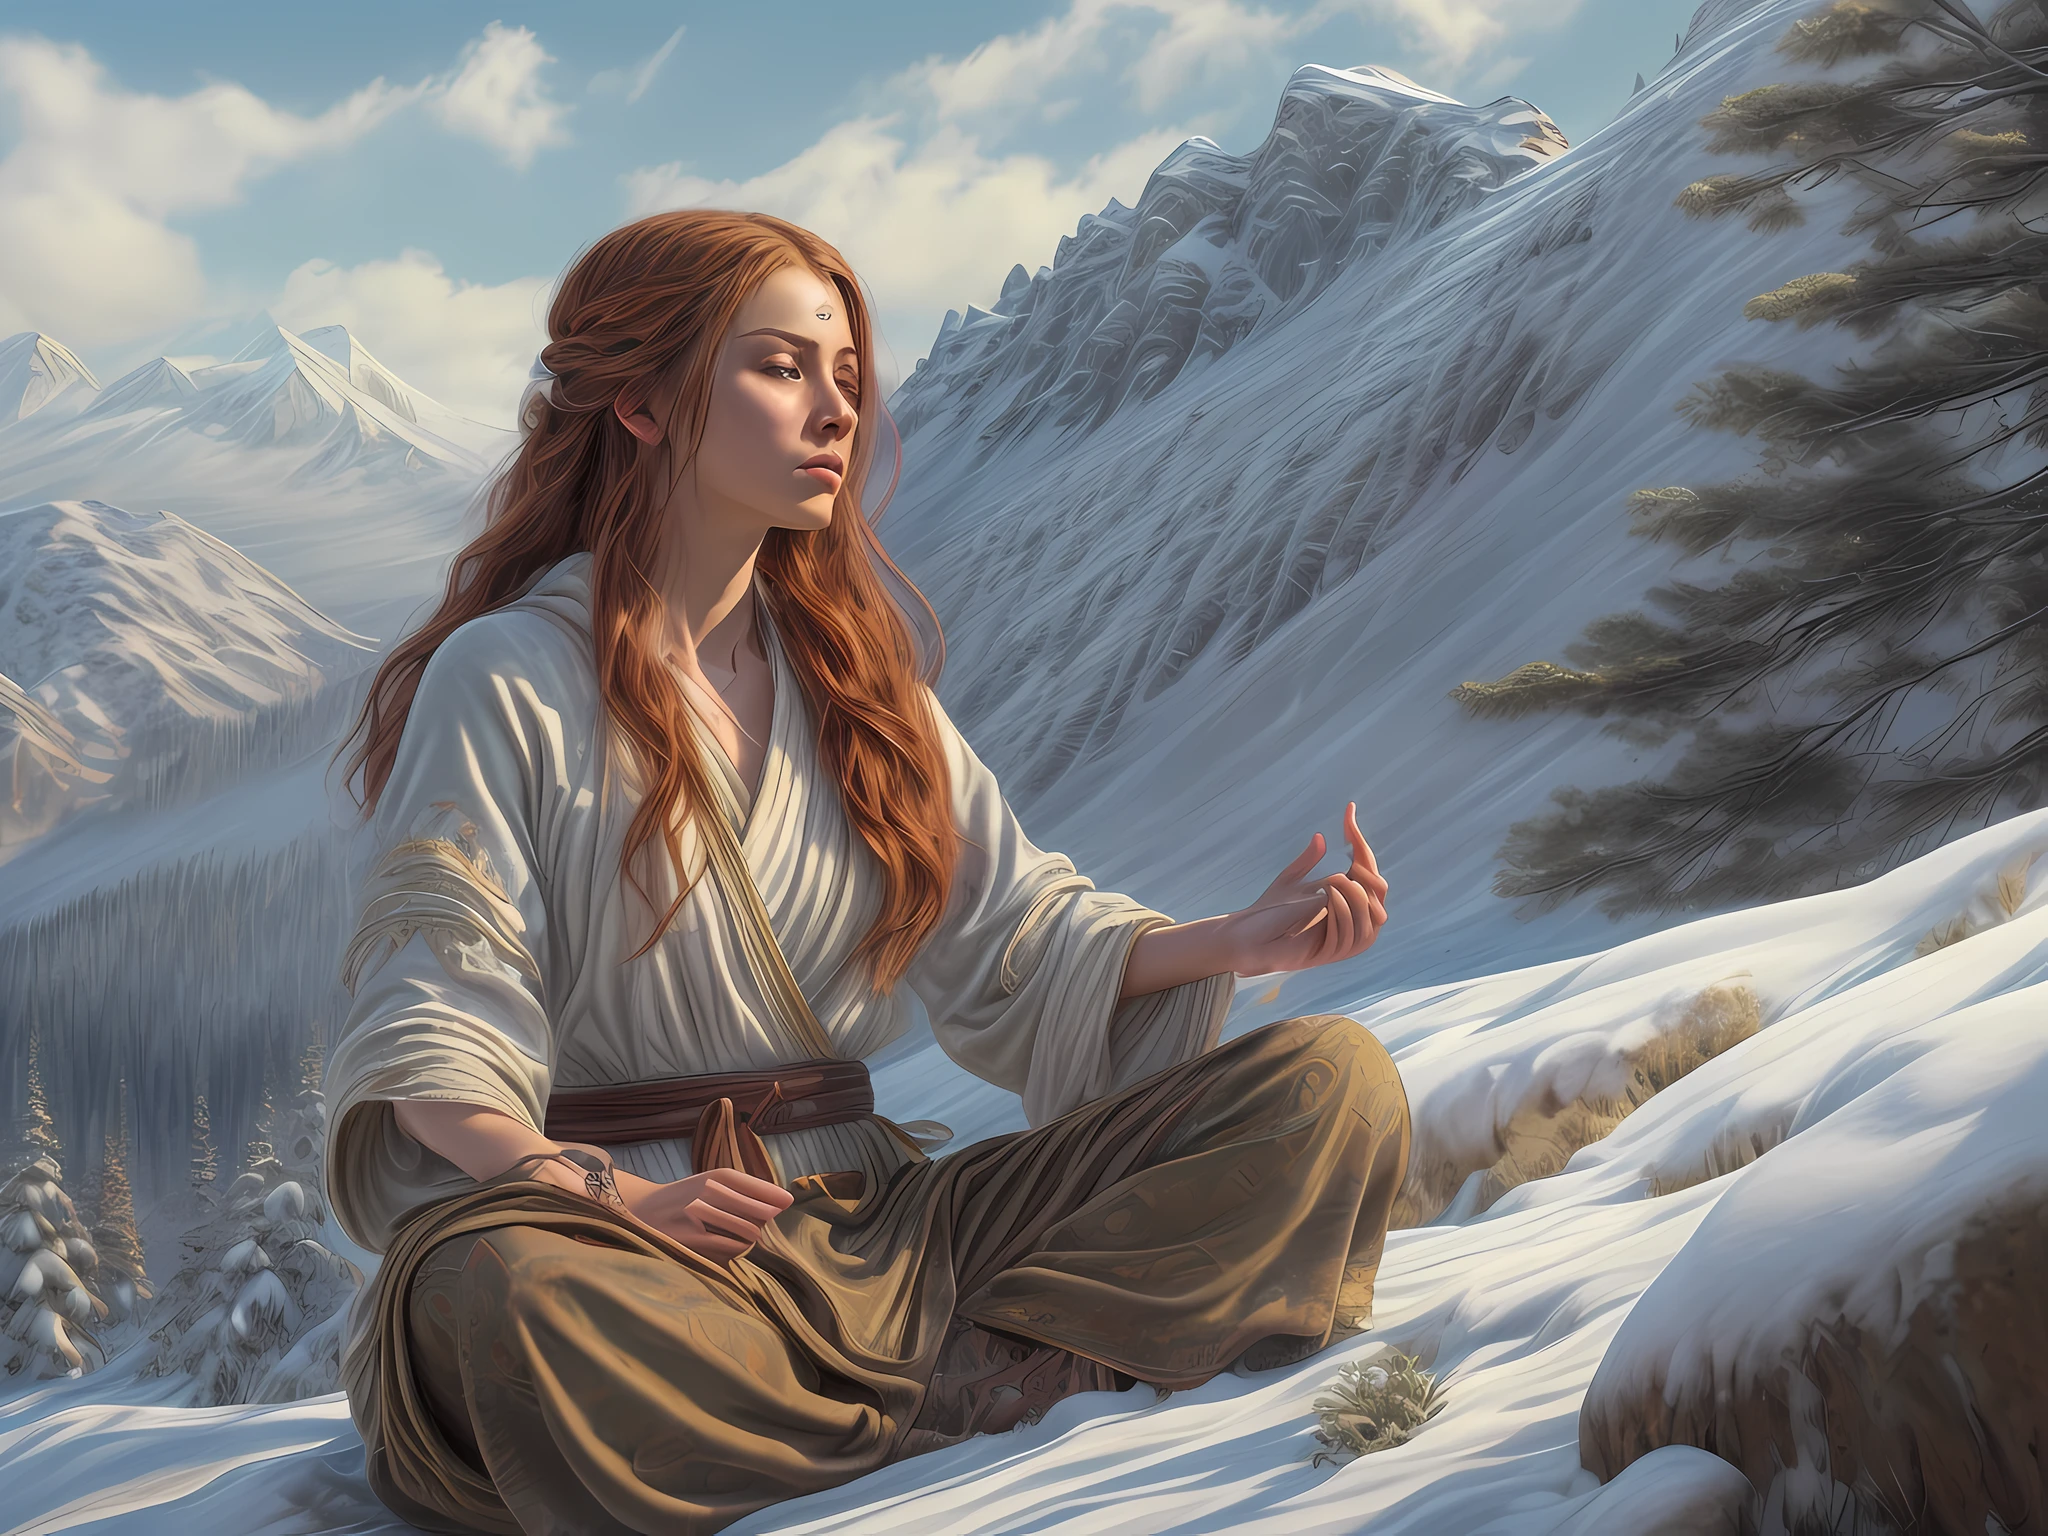 幻想艺术, 真实感, 德&德 art, 拉里·埃尔莫尔风格, 一位女僧人在雪山上盘腿打坐的图片, 雪山顶上，有一位穿着僧衣的人类女僧, 在篝火旁冥想 (最好的细节, 杰作, 最好的质量 :1.5) 在白雪皑皑的森林里 (最好的细节, 杰作, 最好的质量 :1.5), 红发, 长发, 全身 (最好的细节, 杰作, 最好的质量 :1.5), 极其详细 face (最好的细节, 杰作, 最好的质量 :1.5), 极度女性化 (最好的细节, 杰作, 最好的质量 :1.5), 精美美丽 (最好的细节, 杰作, 最好的质量 :1.5) 红发, 长发, 辫发, 皮肤苍白, 蓝眼睛, 专注的目光, 超最佳现实主义, 最好的细节, 最好的质量, 16千, [极其详细], 杰作, 最好的质量, (极其详细), 超广角拍摄, 照相写实主义, 景深, 超现实主义绘画, 3德 rendering, gl0w1ngR